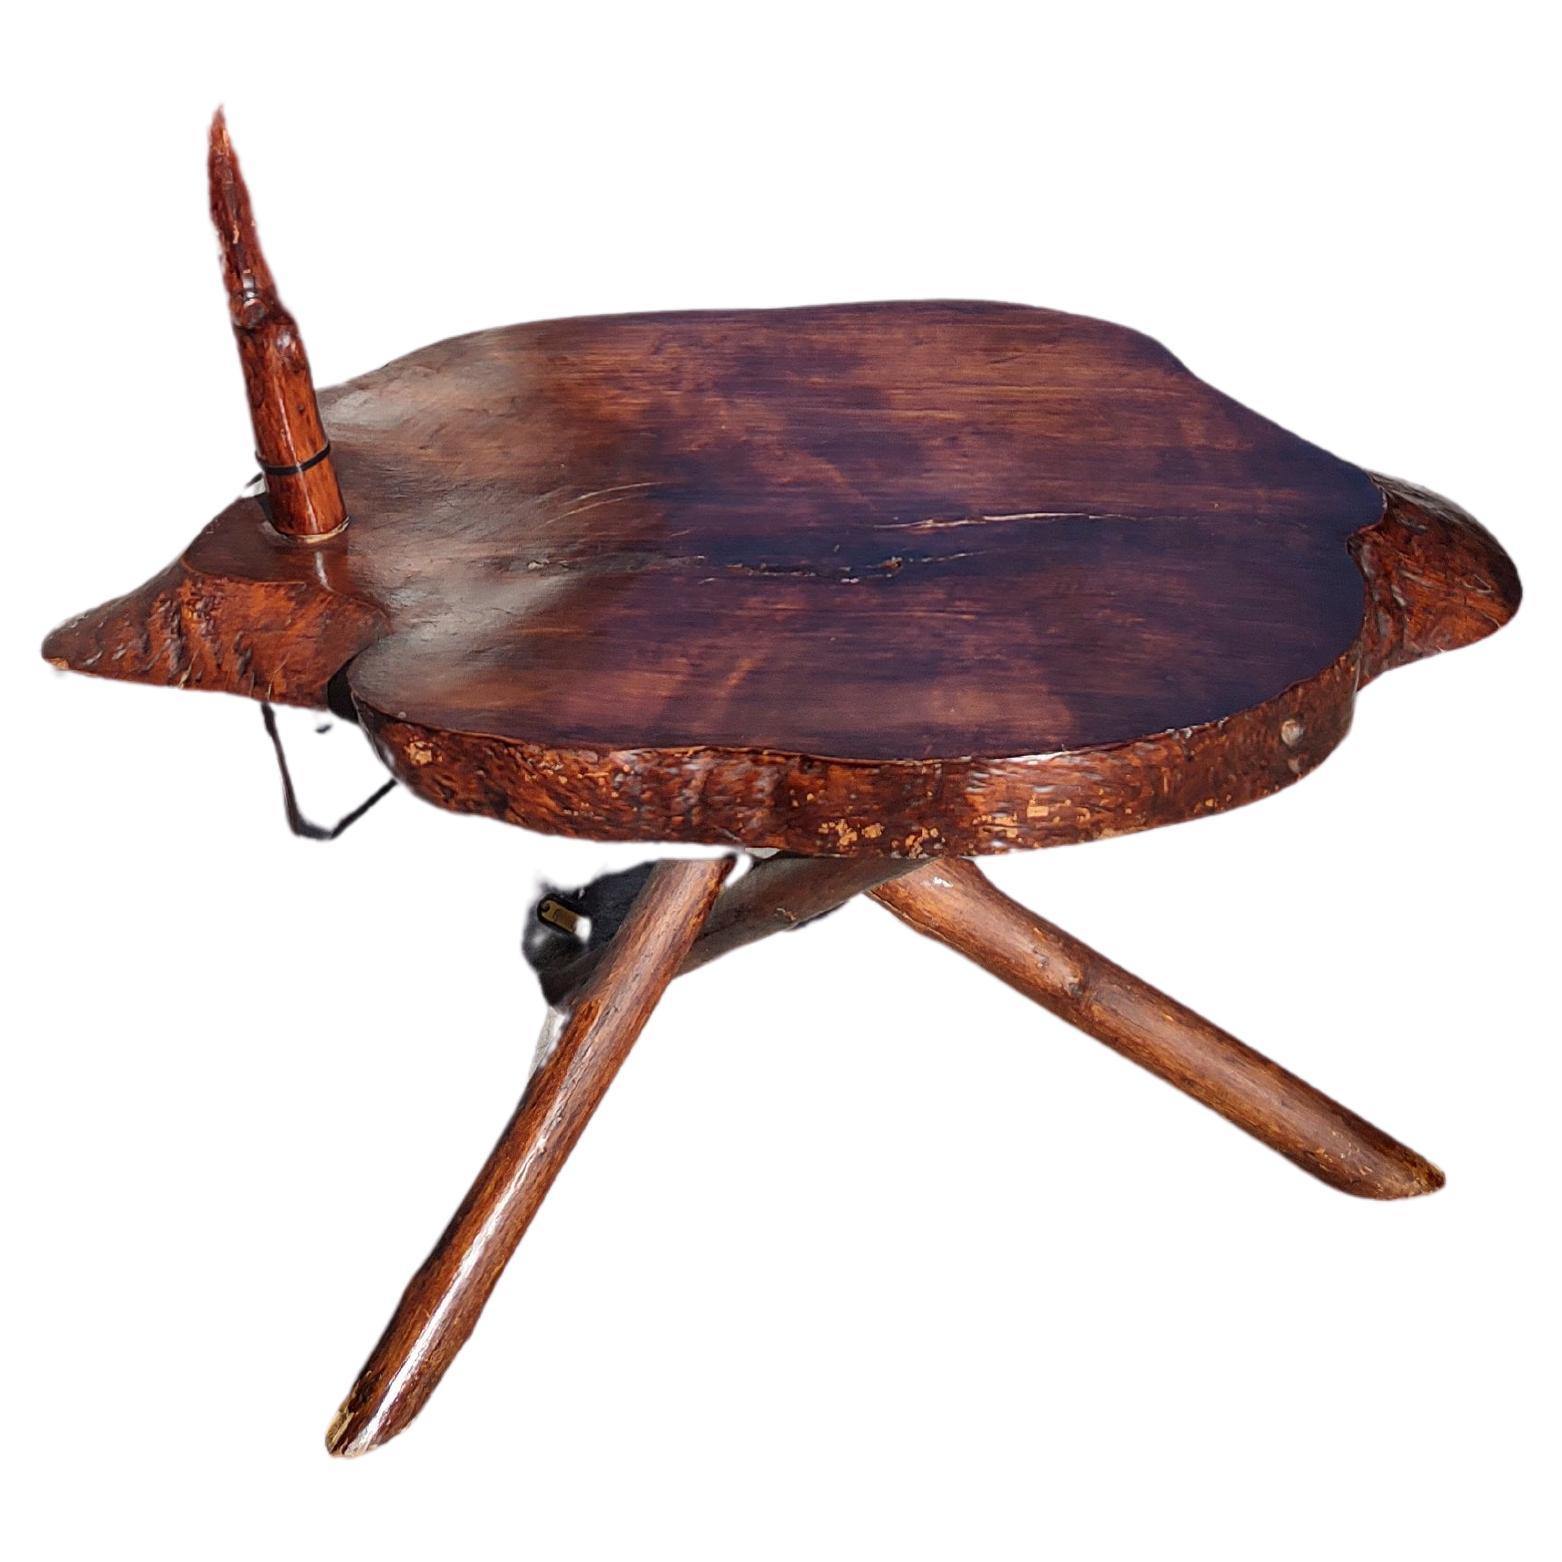 Fabelhafte, gebogene Twig-Stehlampe im Adirondack-Stil mit einem Tisch in guter Größe. Der Tisch ist 29 x 19,5 cm groß und 1,85 cm dick. Aus einheimischem Ahornholz gefertigt und gebeizt. In ausgezeichnetem Vintage-Zustand mit minimalen